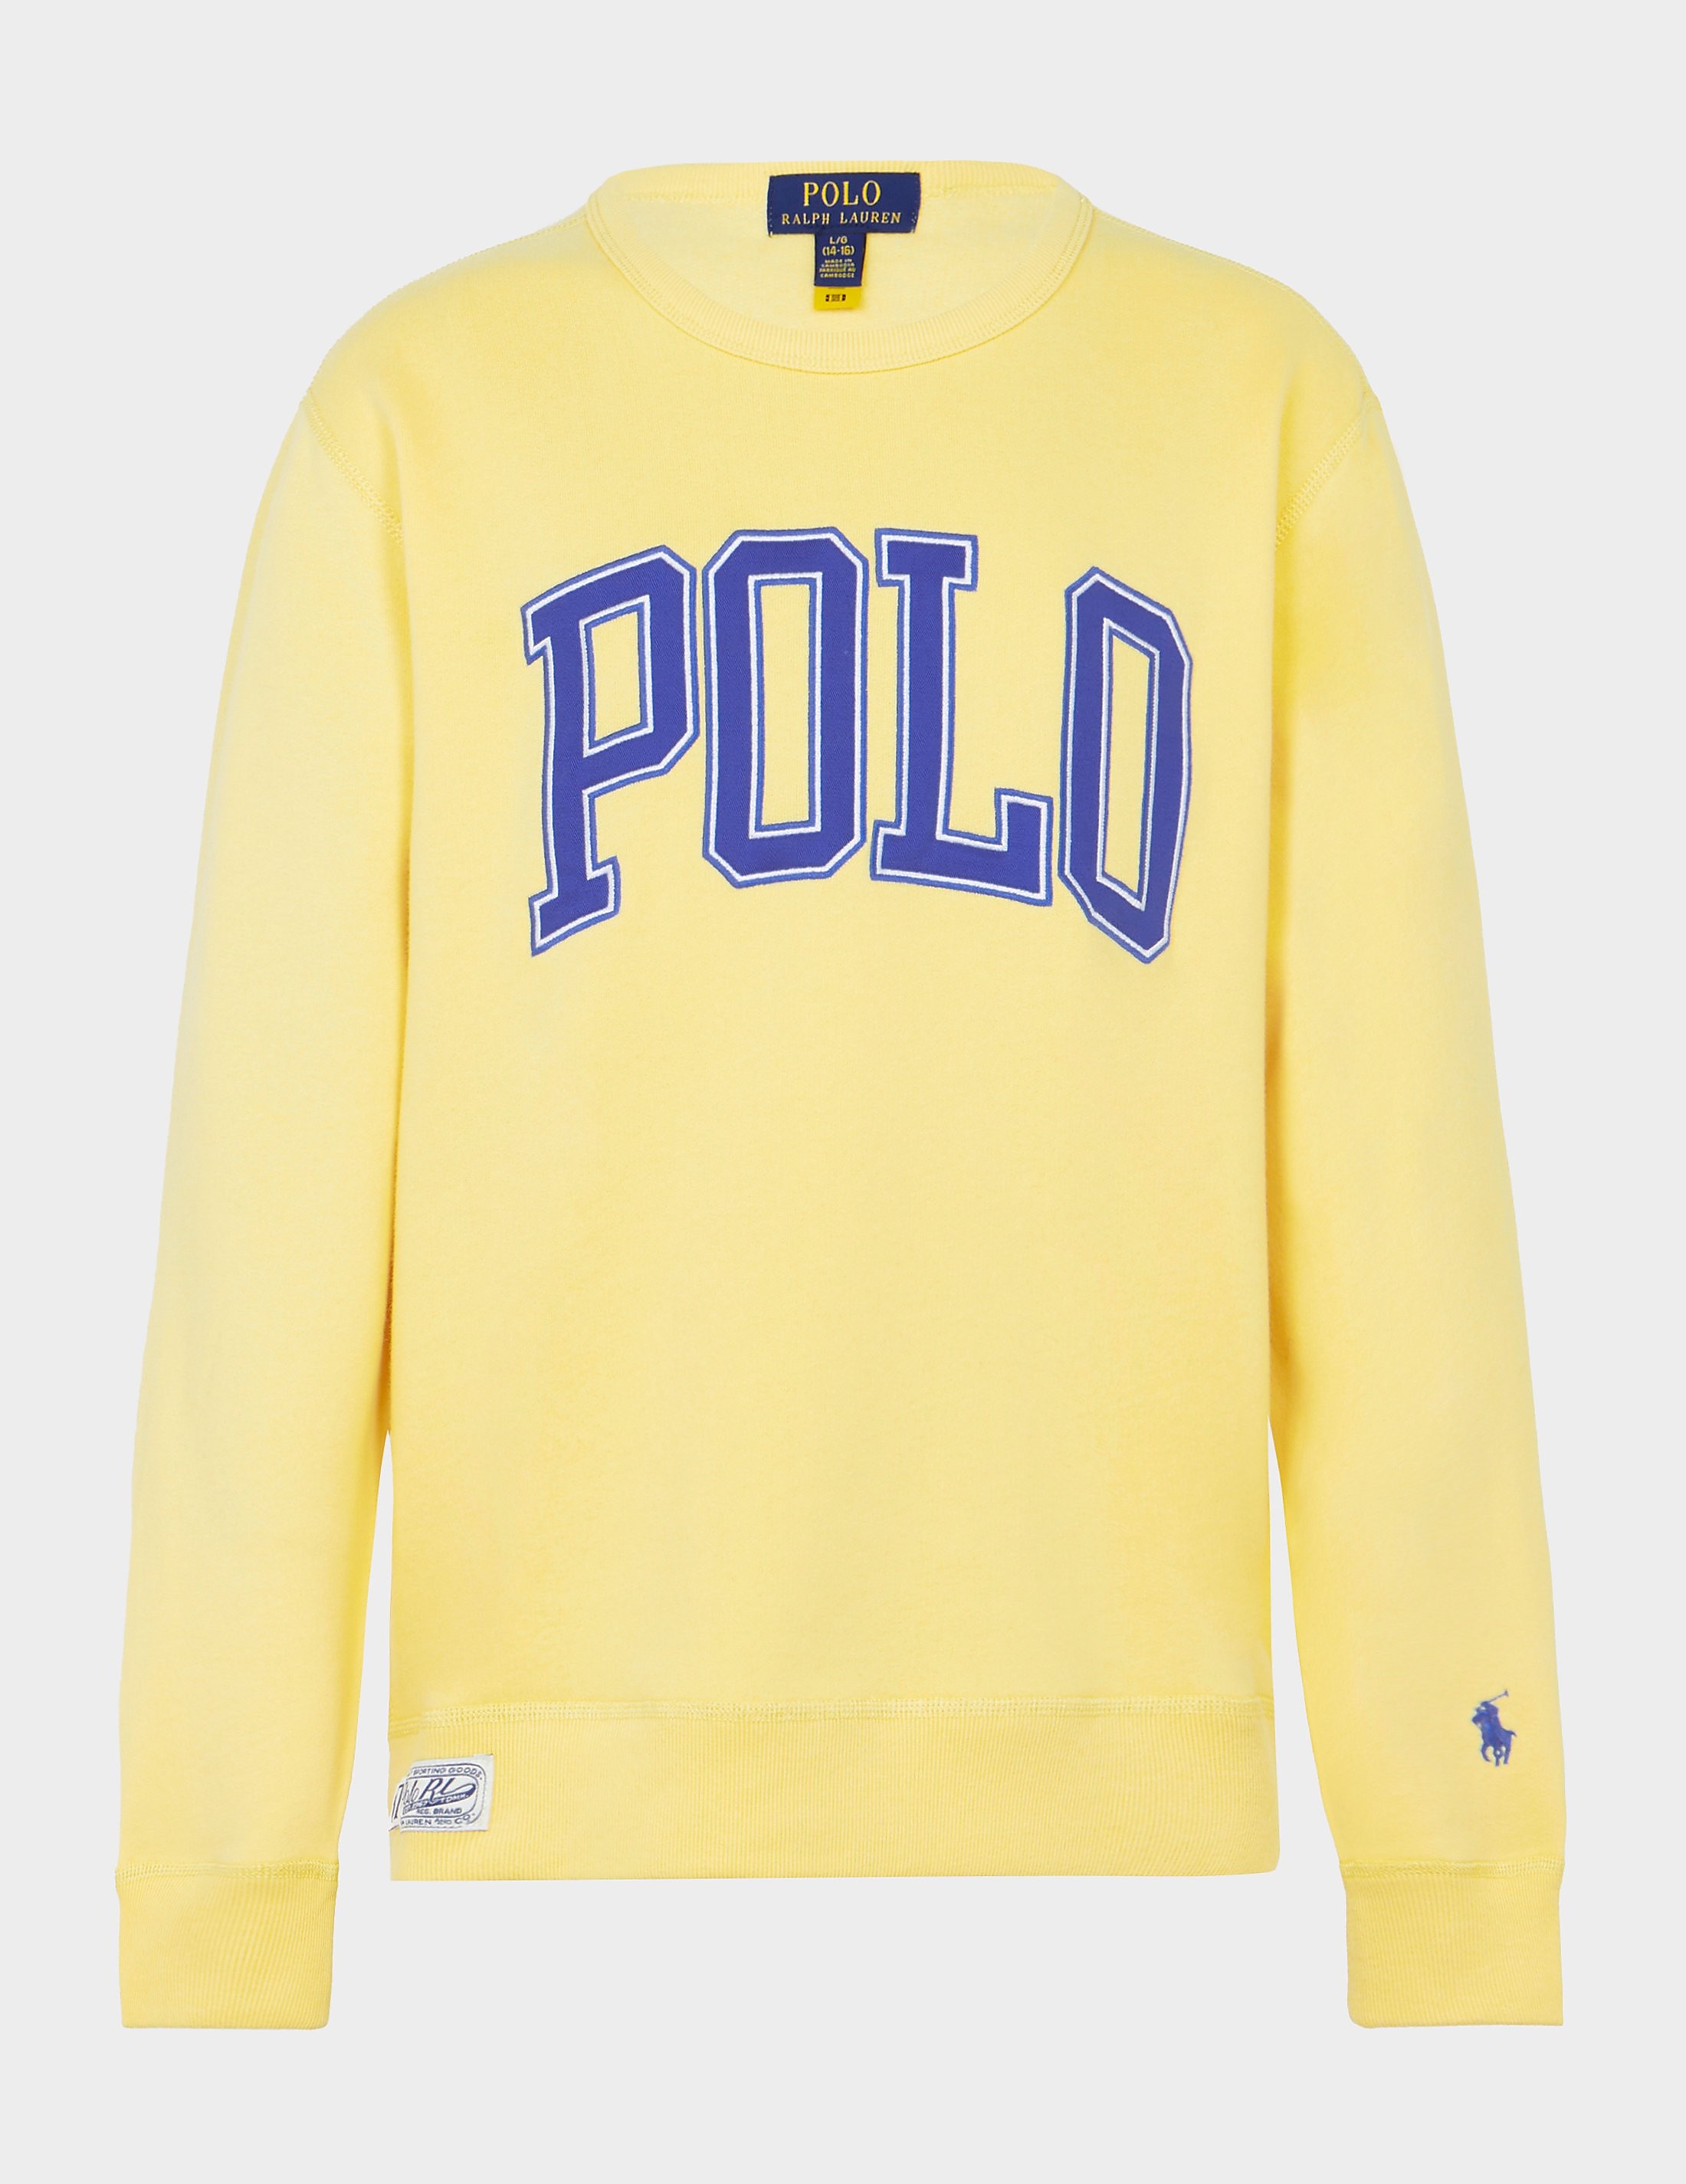 Polo Ralph Lauren Polo Sweatshirt Yellow, Yellow